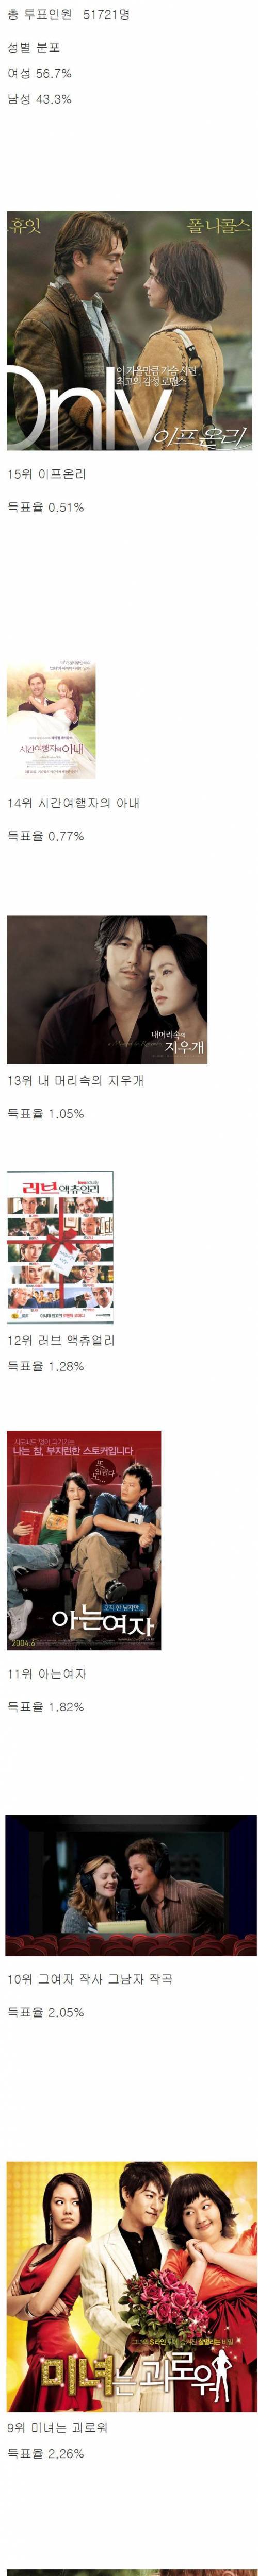 한국인 5만명이 뽑은 로맨스 영화 top15